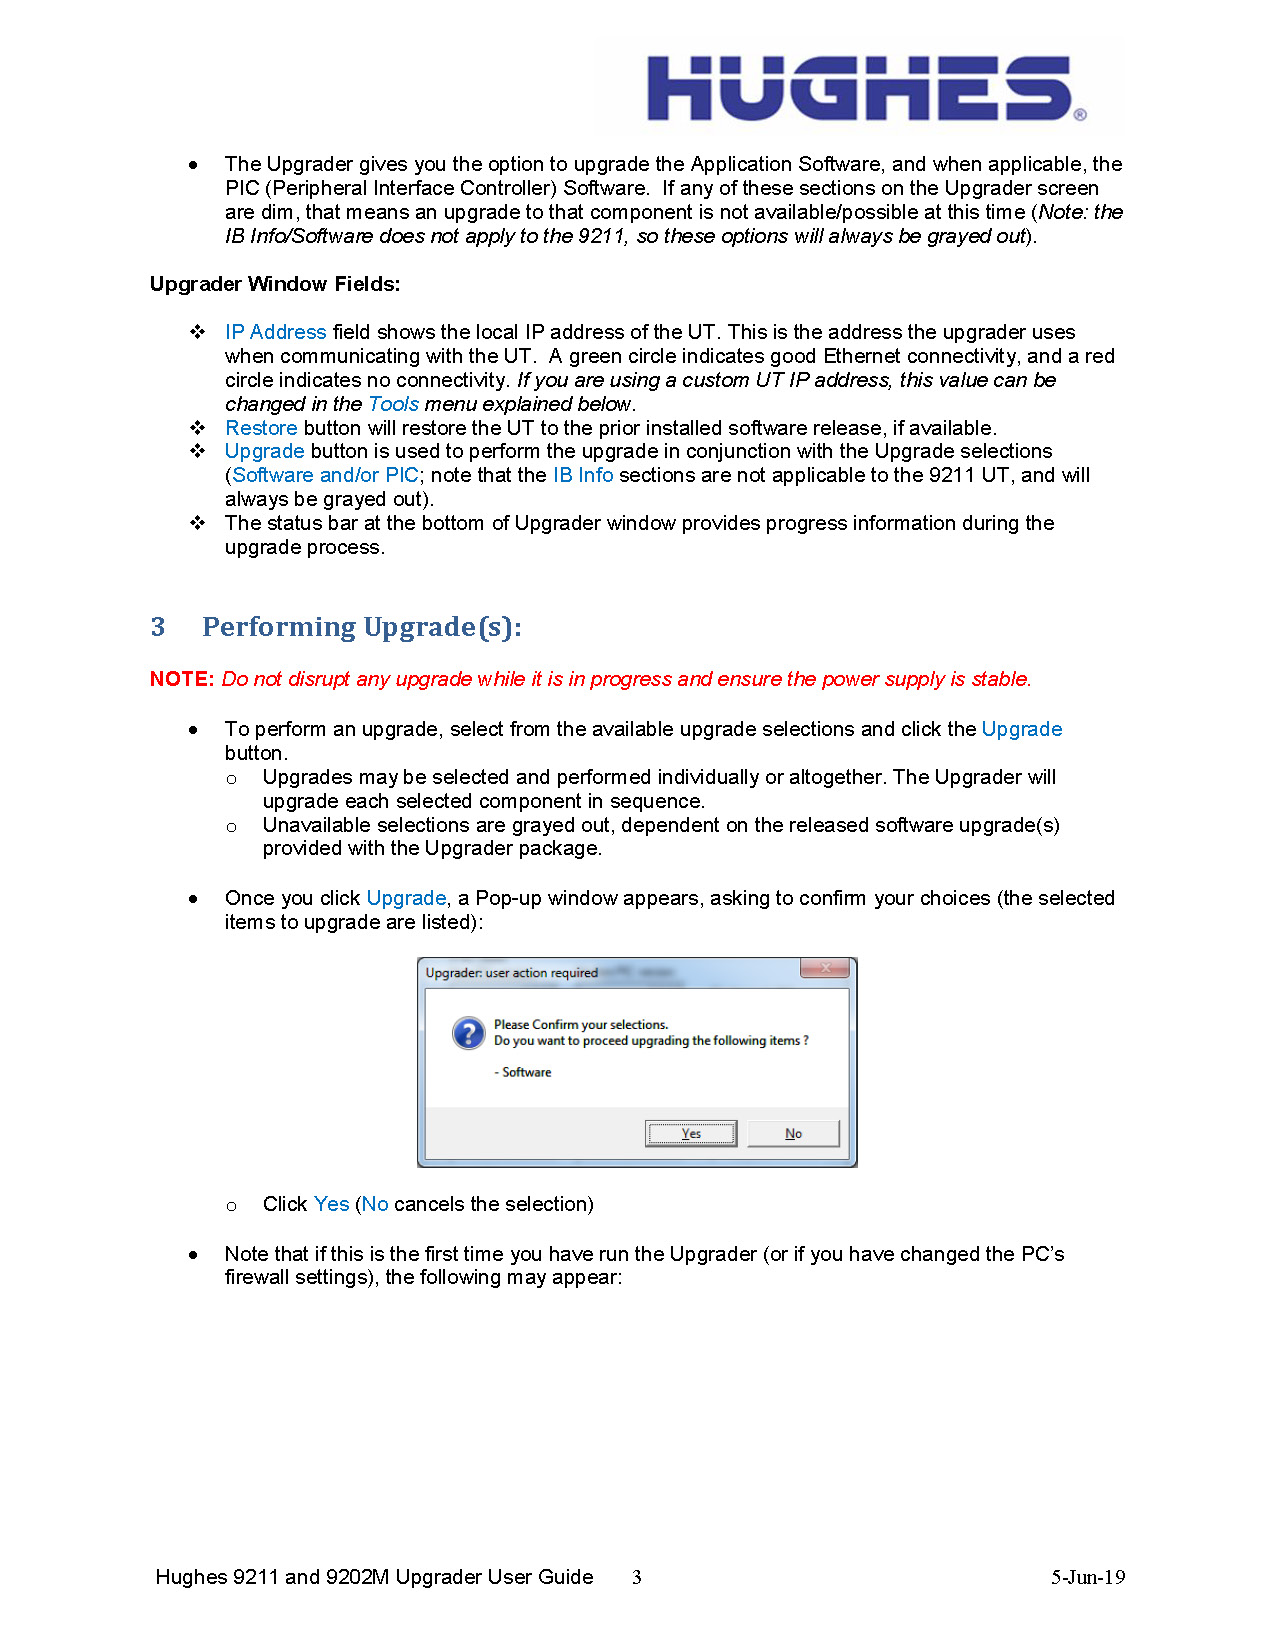 Hughes_9211_Upgrader_User_Instructions_PC_v2.pdf_Page_3.jpg